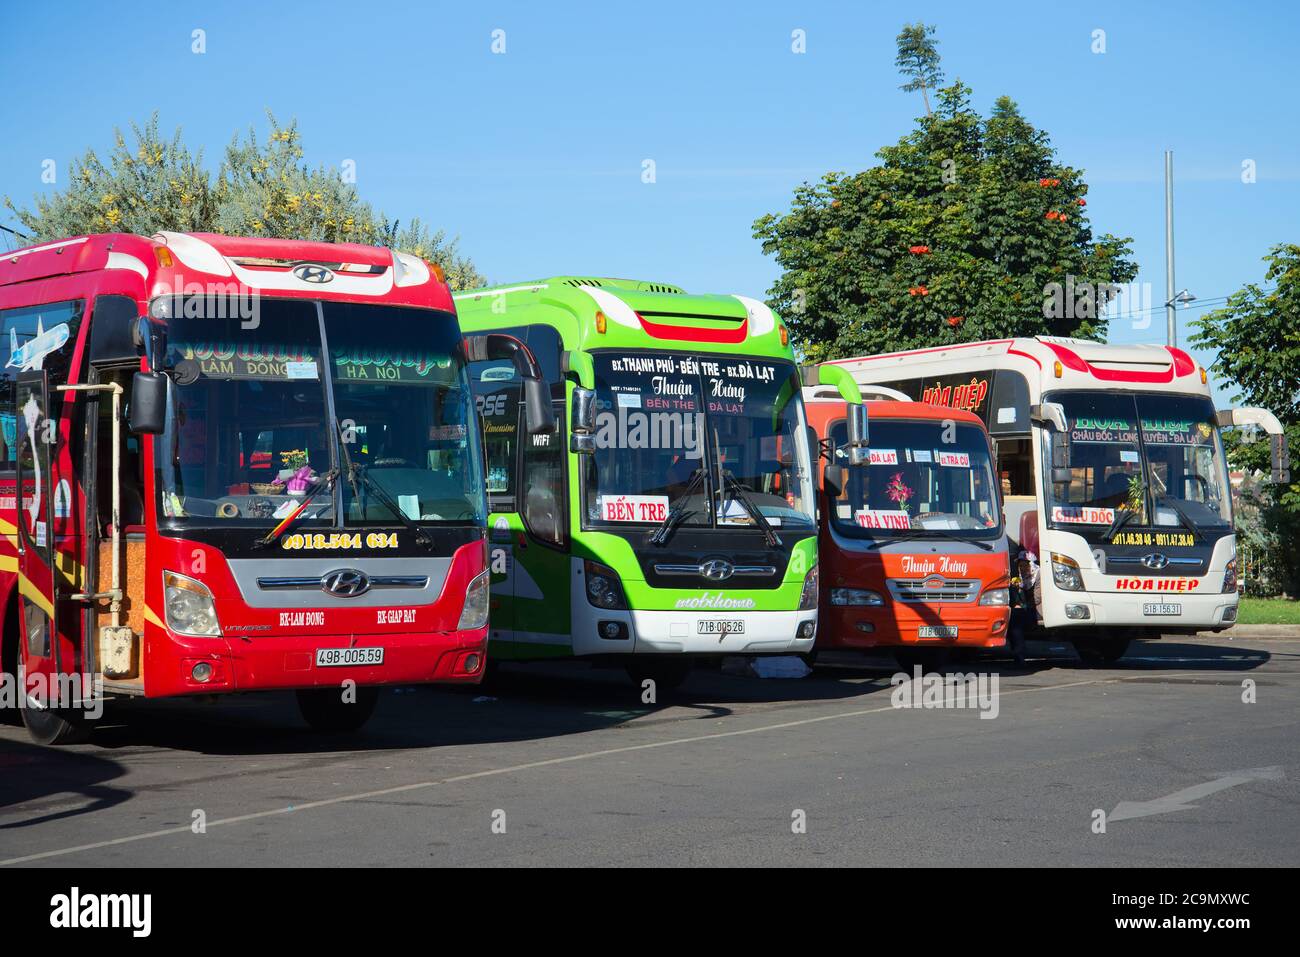 DA LAT, VIETNAM - 28. DEZEMBER 2015: Vier Intercity-Busse auf dem Parkplatz des Intercity-Verkehrsterminals Stockfoto